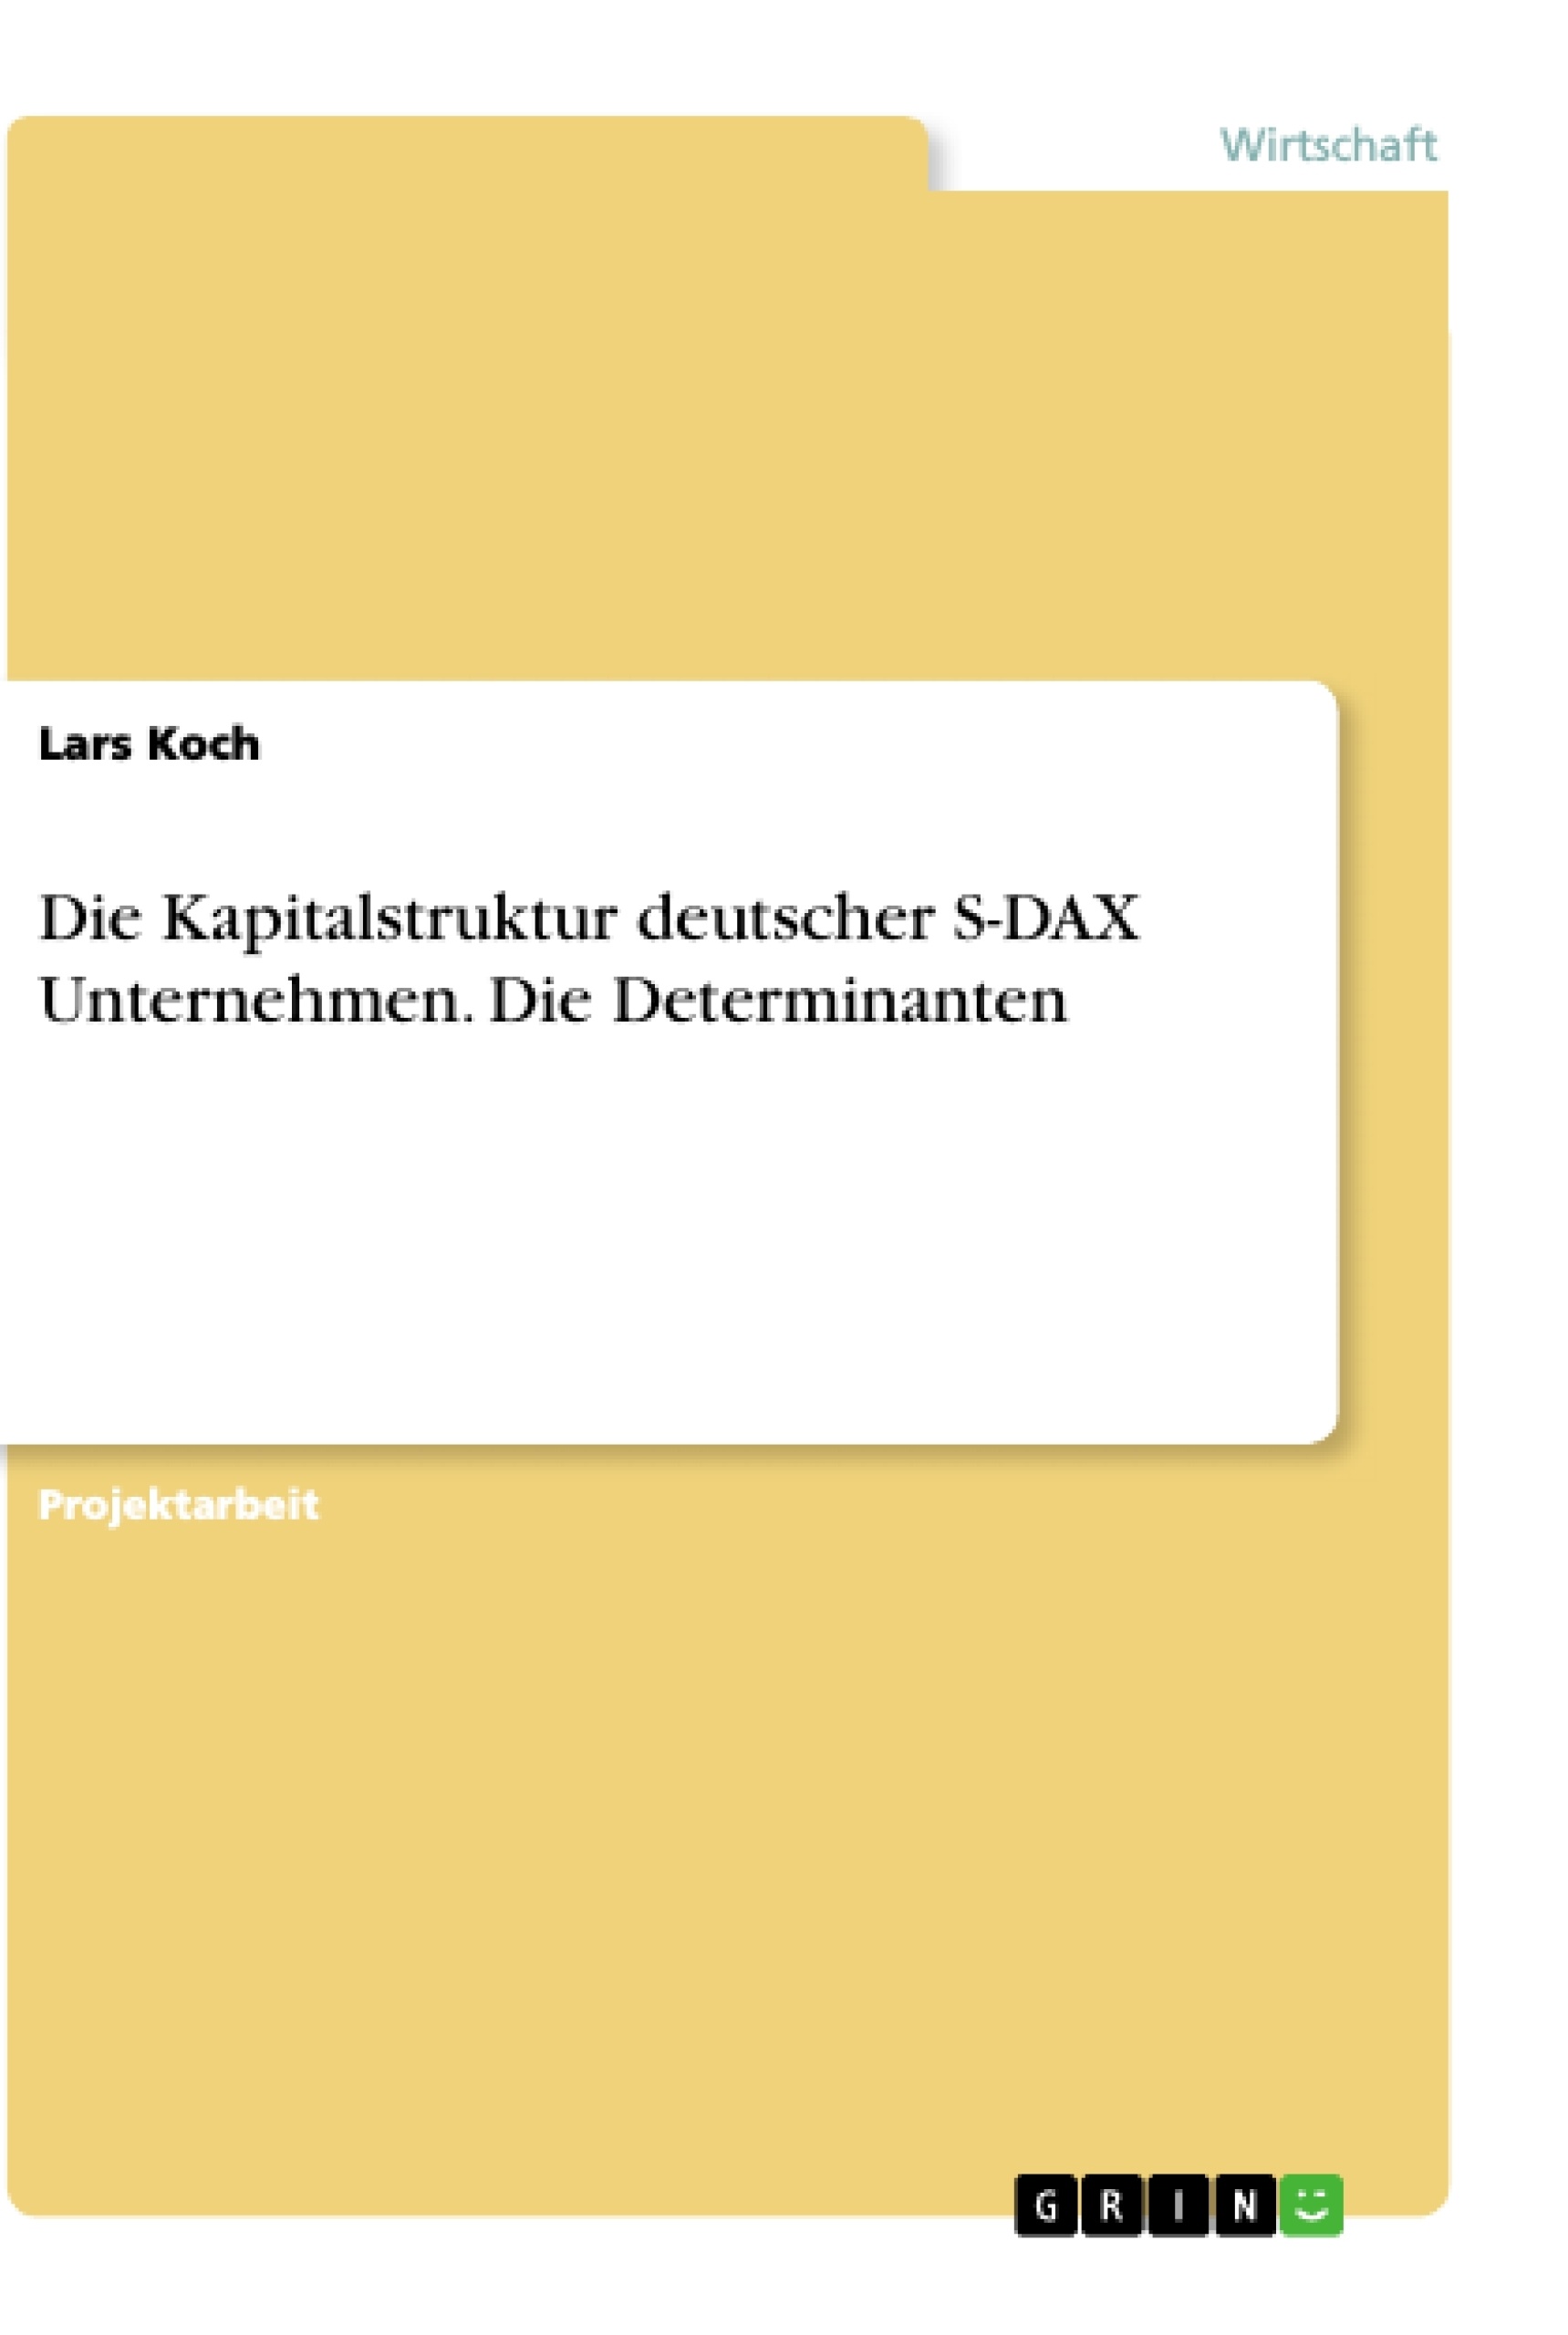 Titel: Die Kapitalstruktur deutscher S-DAX Unternehmen. Die Determinanten